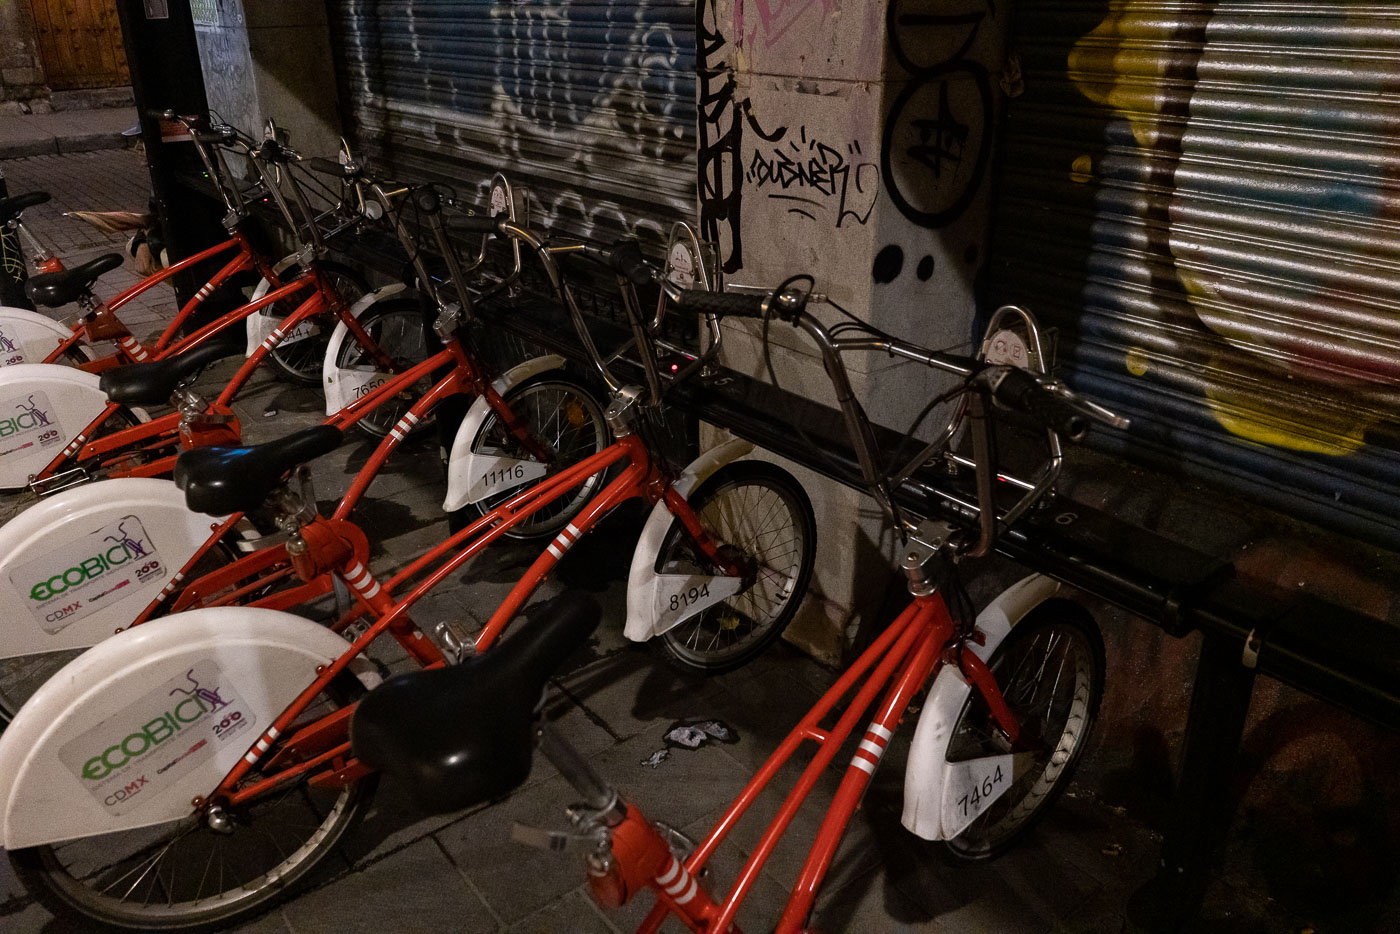 Ecobici bike share bikes in mexico city